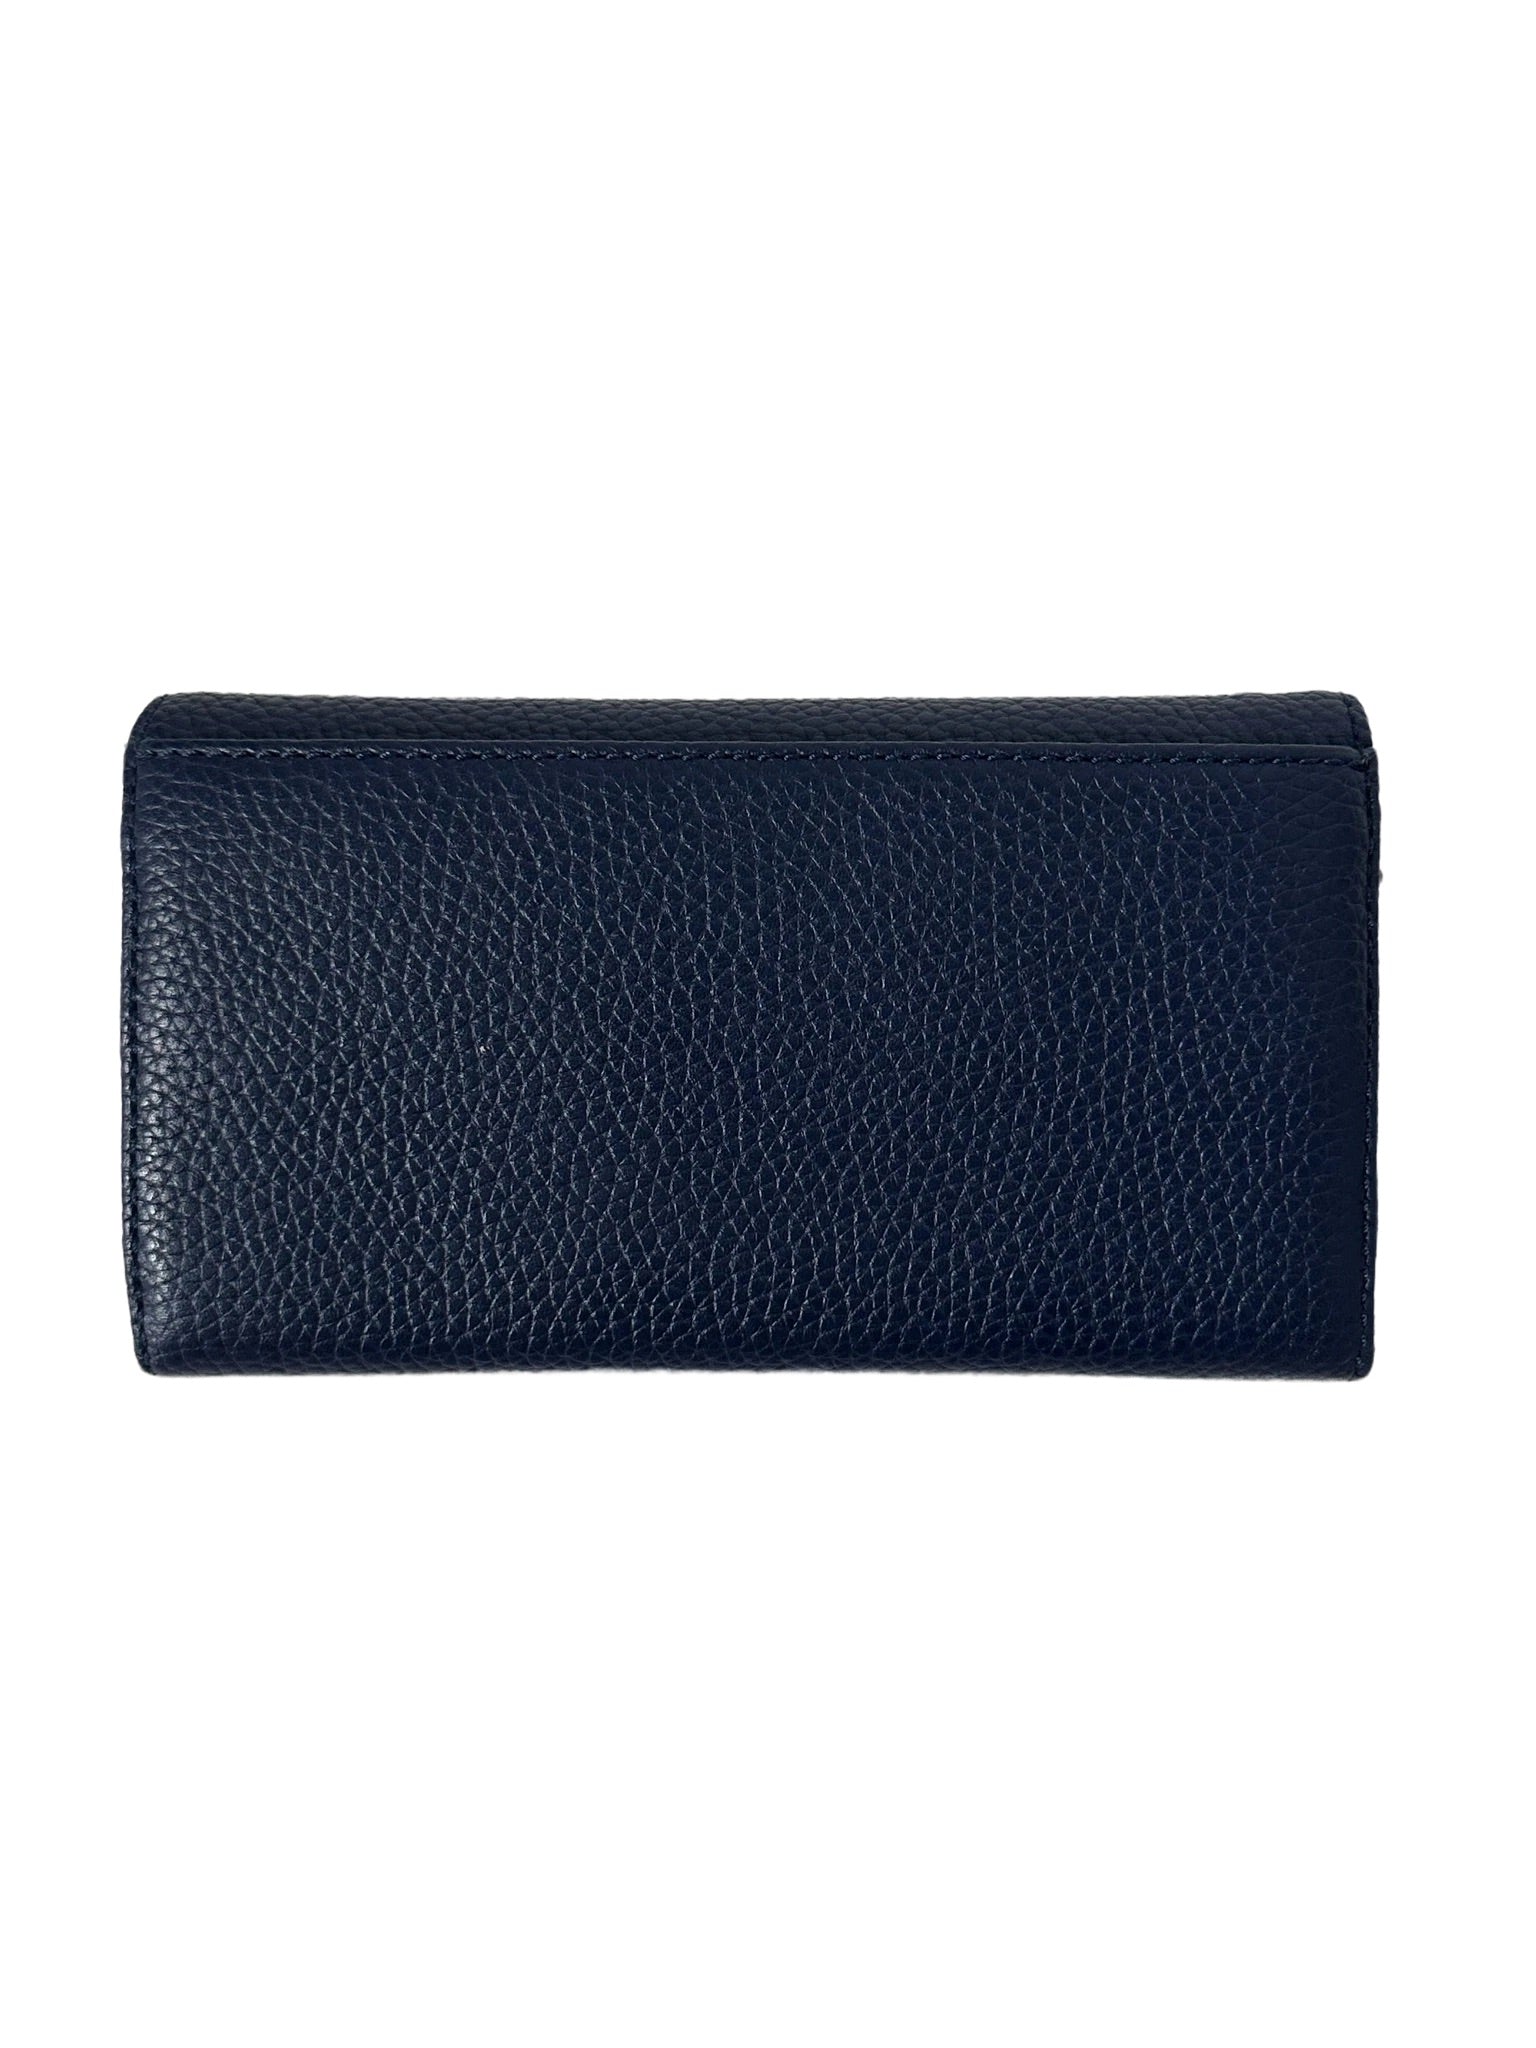 Navy Blue Wallet